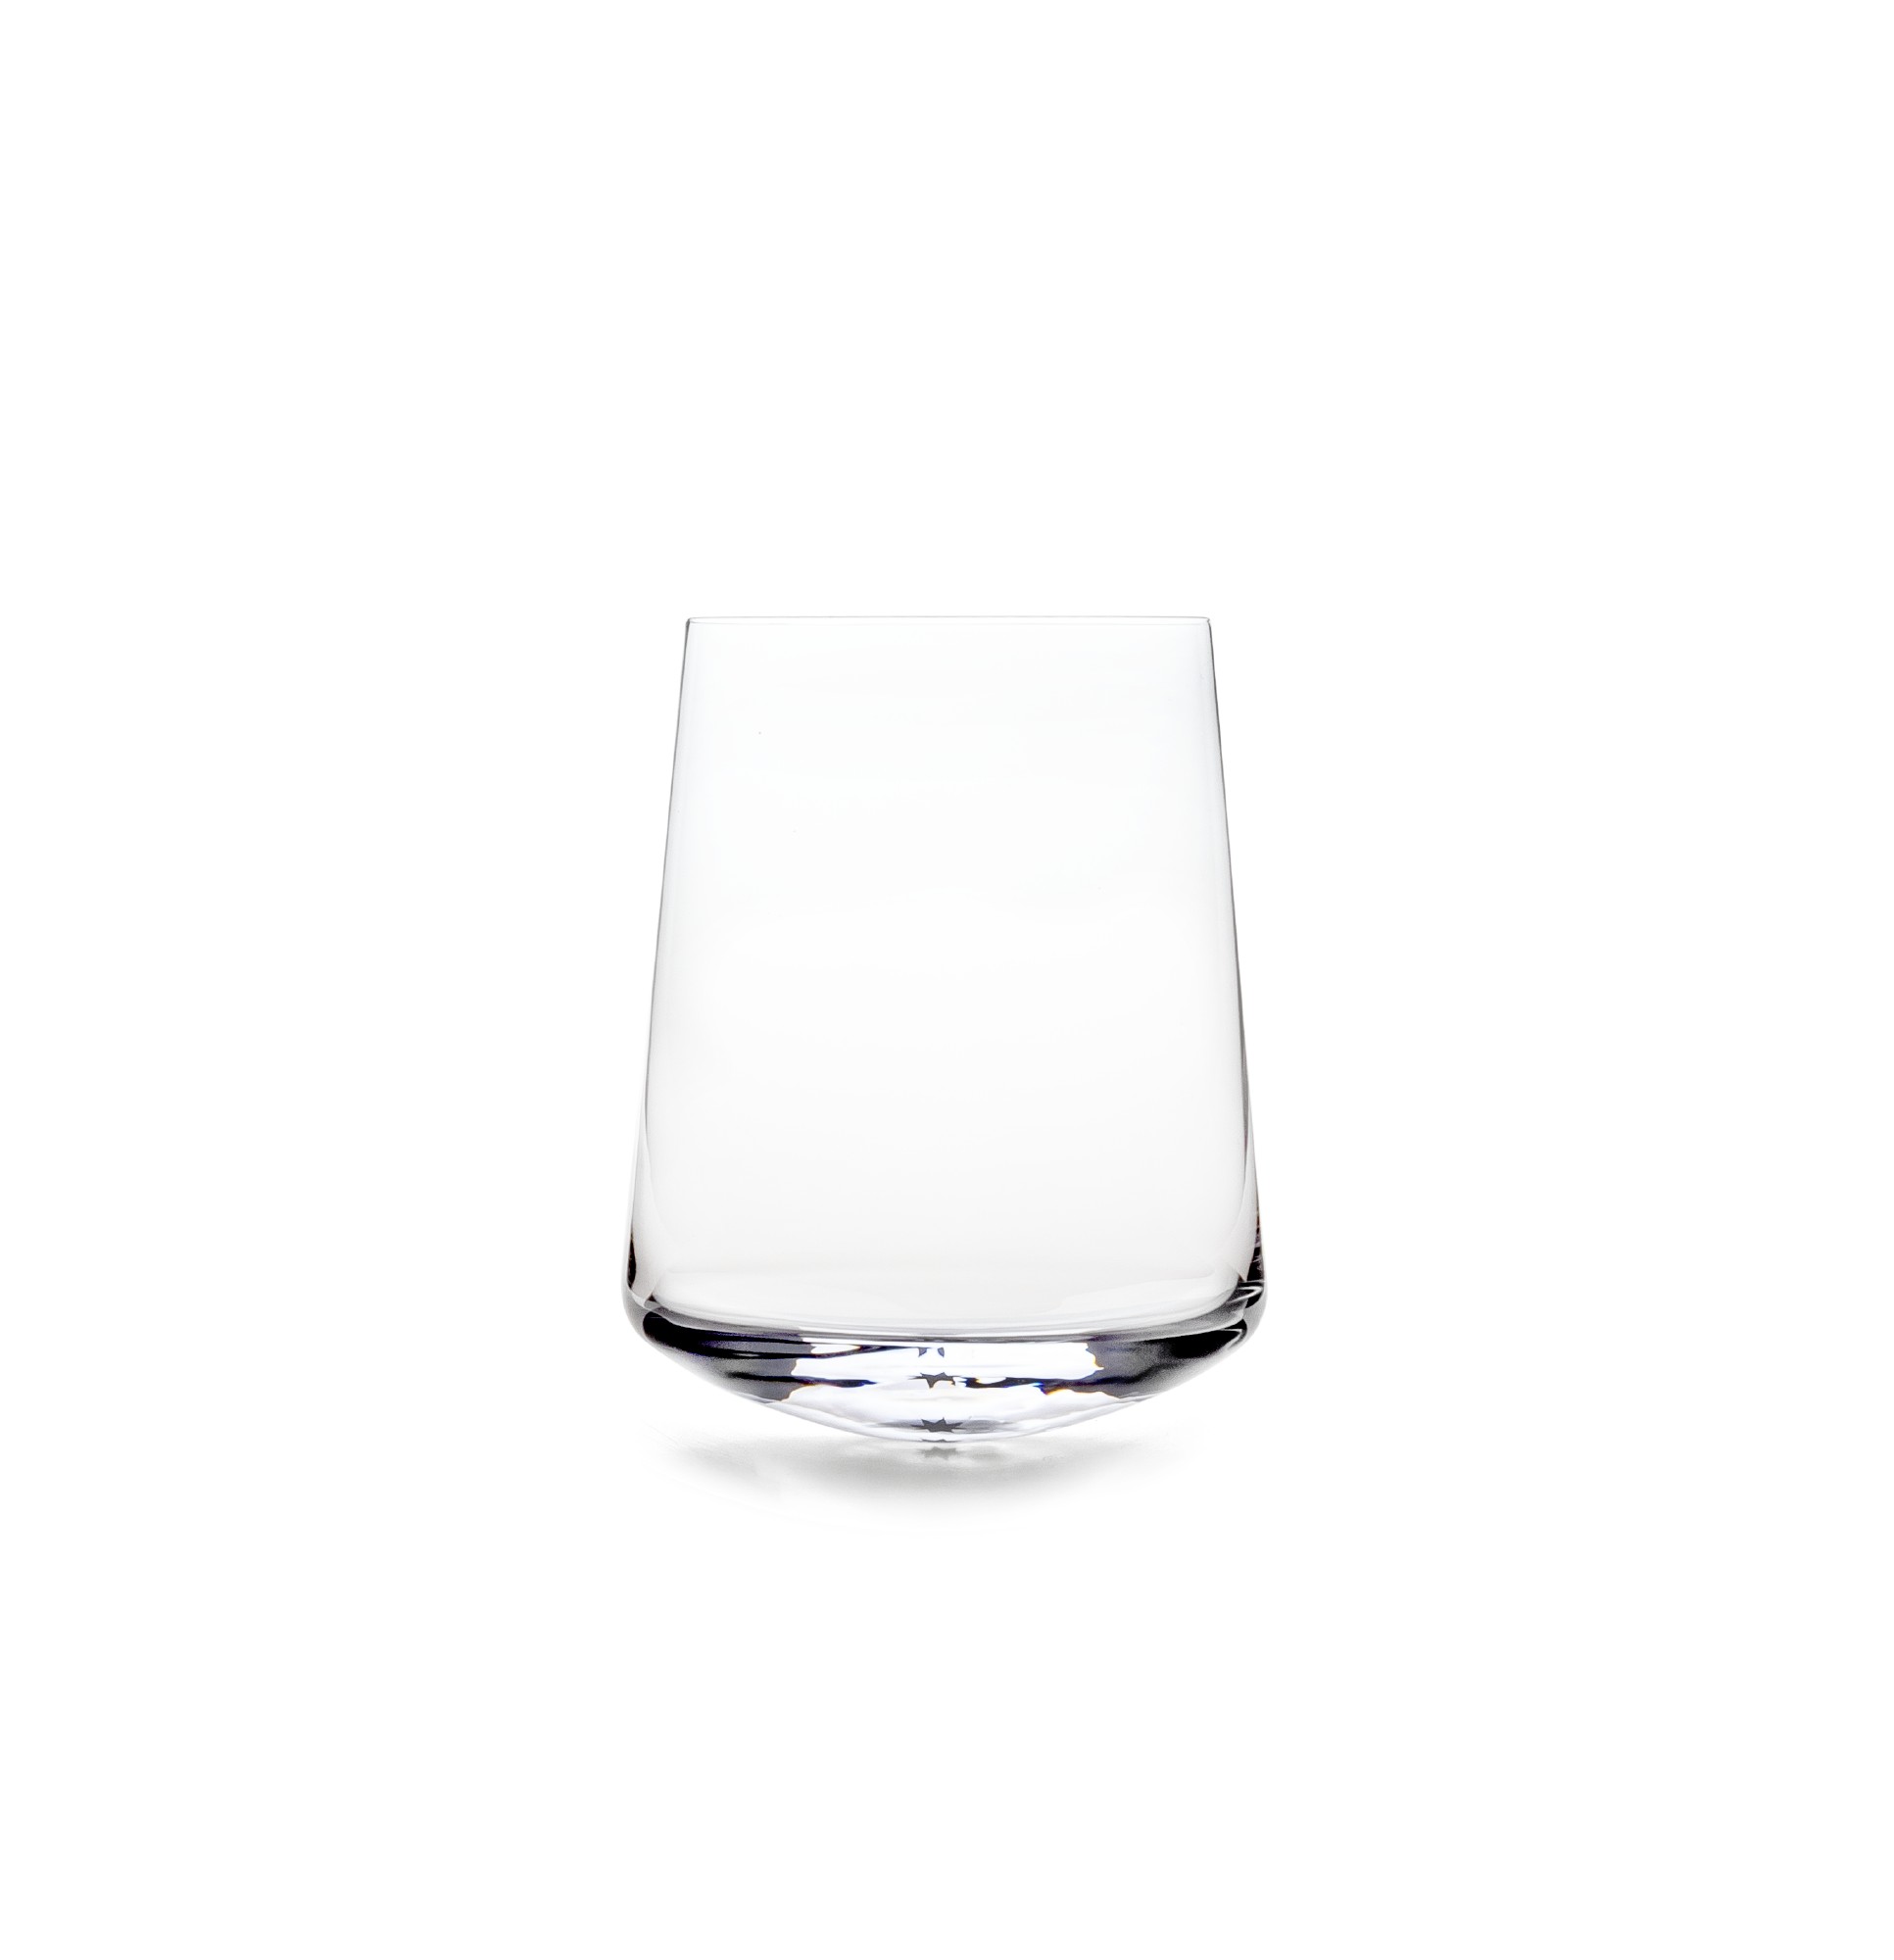 Stand Up White Wine Glass Sieger by Ichendorf Milano